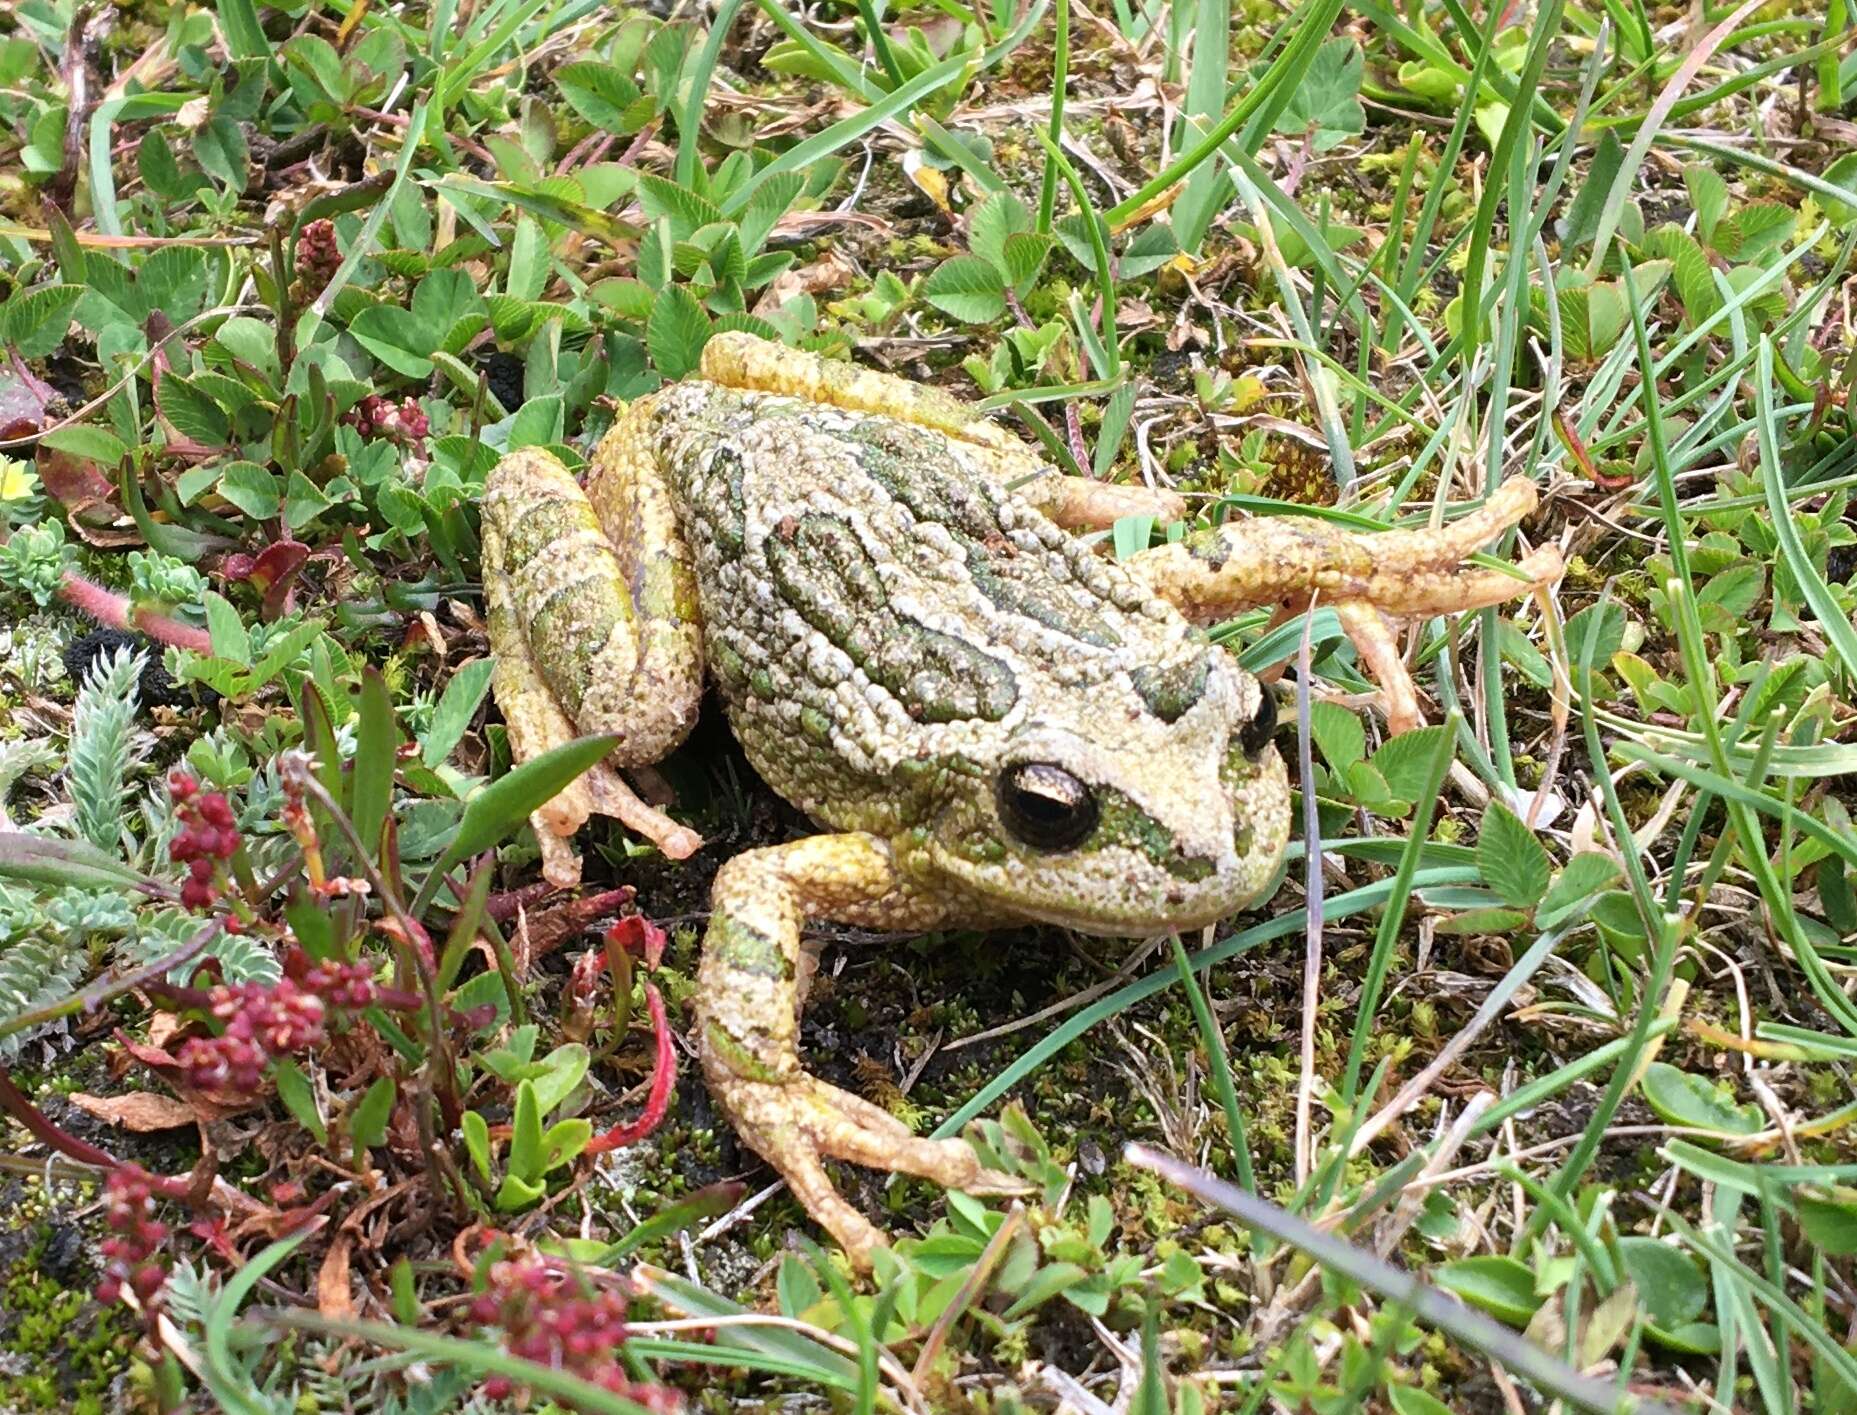 Image of Peru marsupial frog